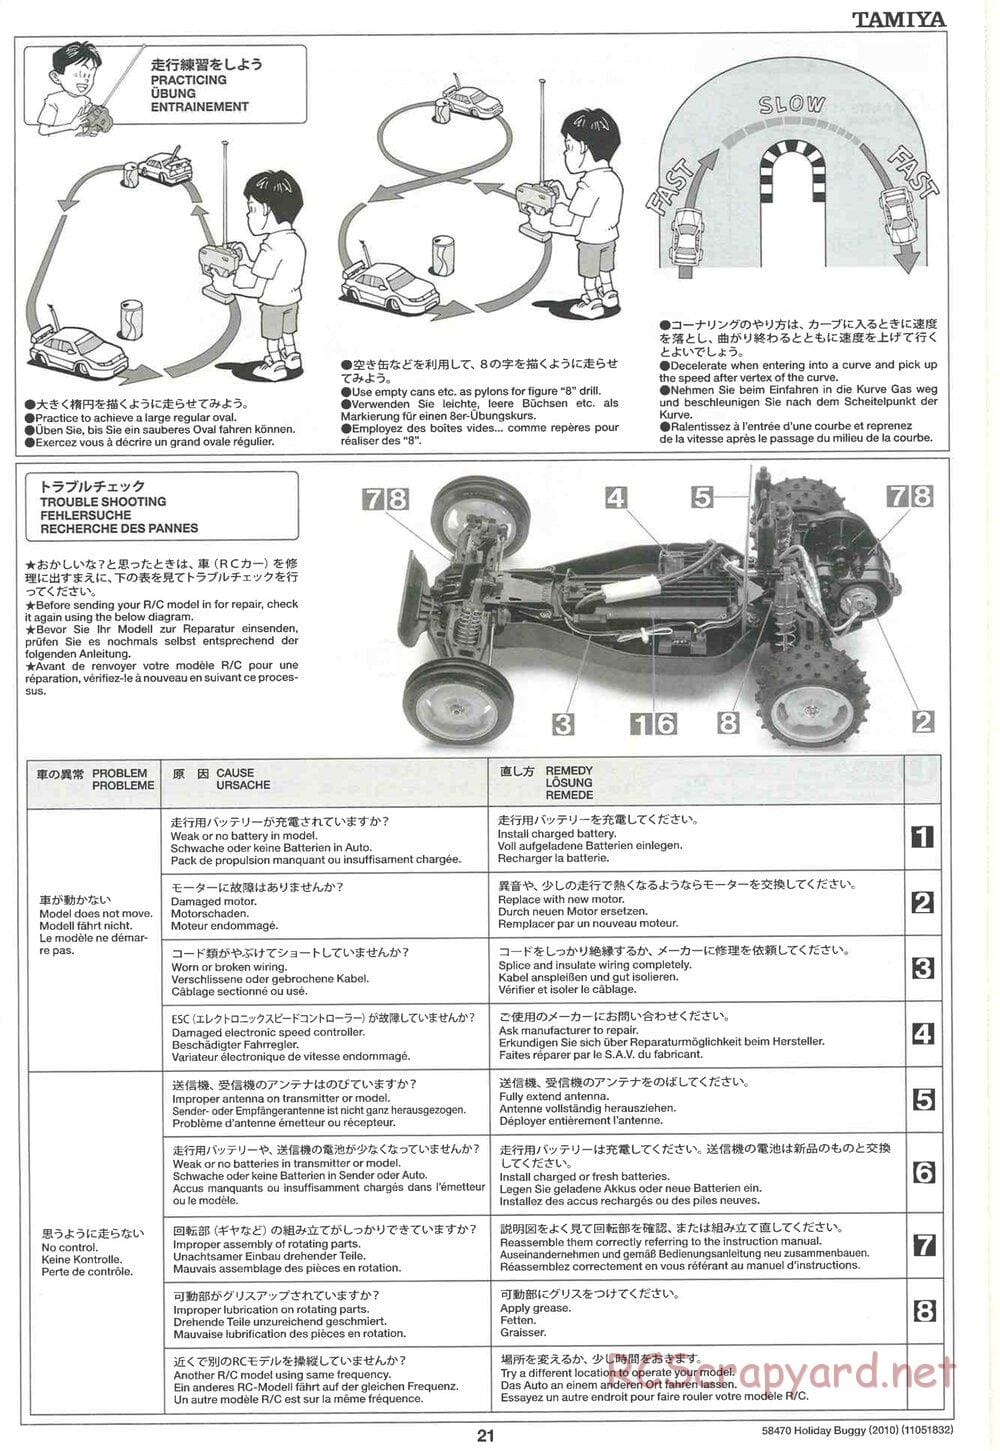 Tamiya - Holiday Buggy 2010 Chassis - Manual - Page 21